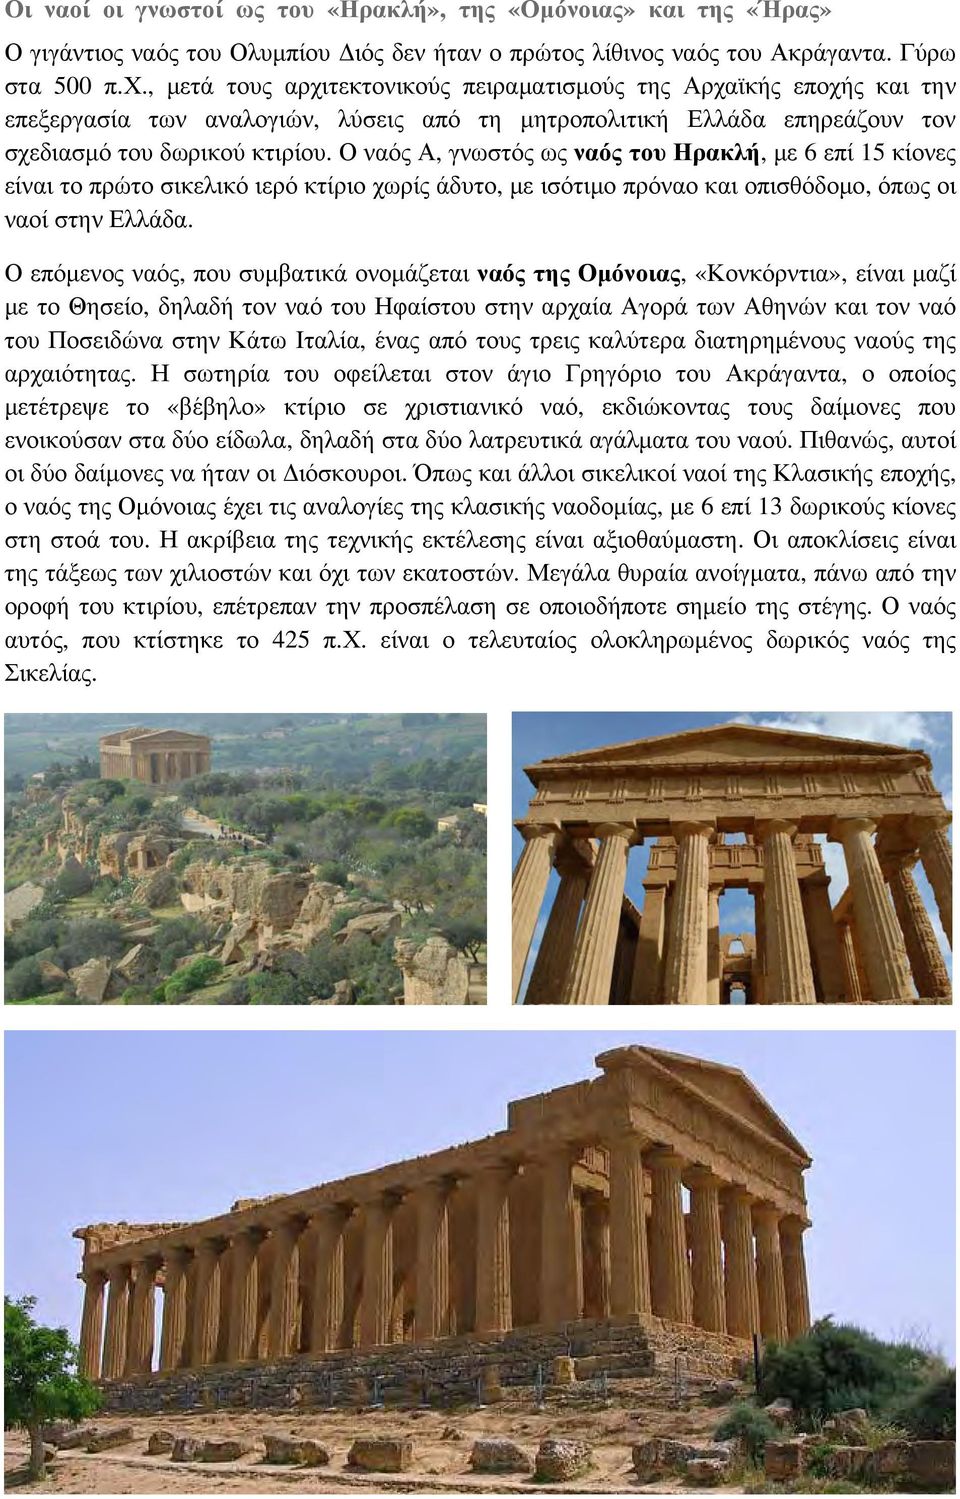 Ο ναός Α, γνωστός ως ναός του Ηρακλή, με 6 επί 15 κίονες είναι το πρώτο σικελικό ιερό κτίριο χωρίς άδυτο, με ισότιμο πρόναο και οπισθόδομο, όπως οι ναοί στην Ελλάδα.